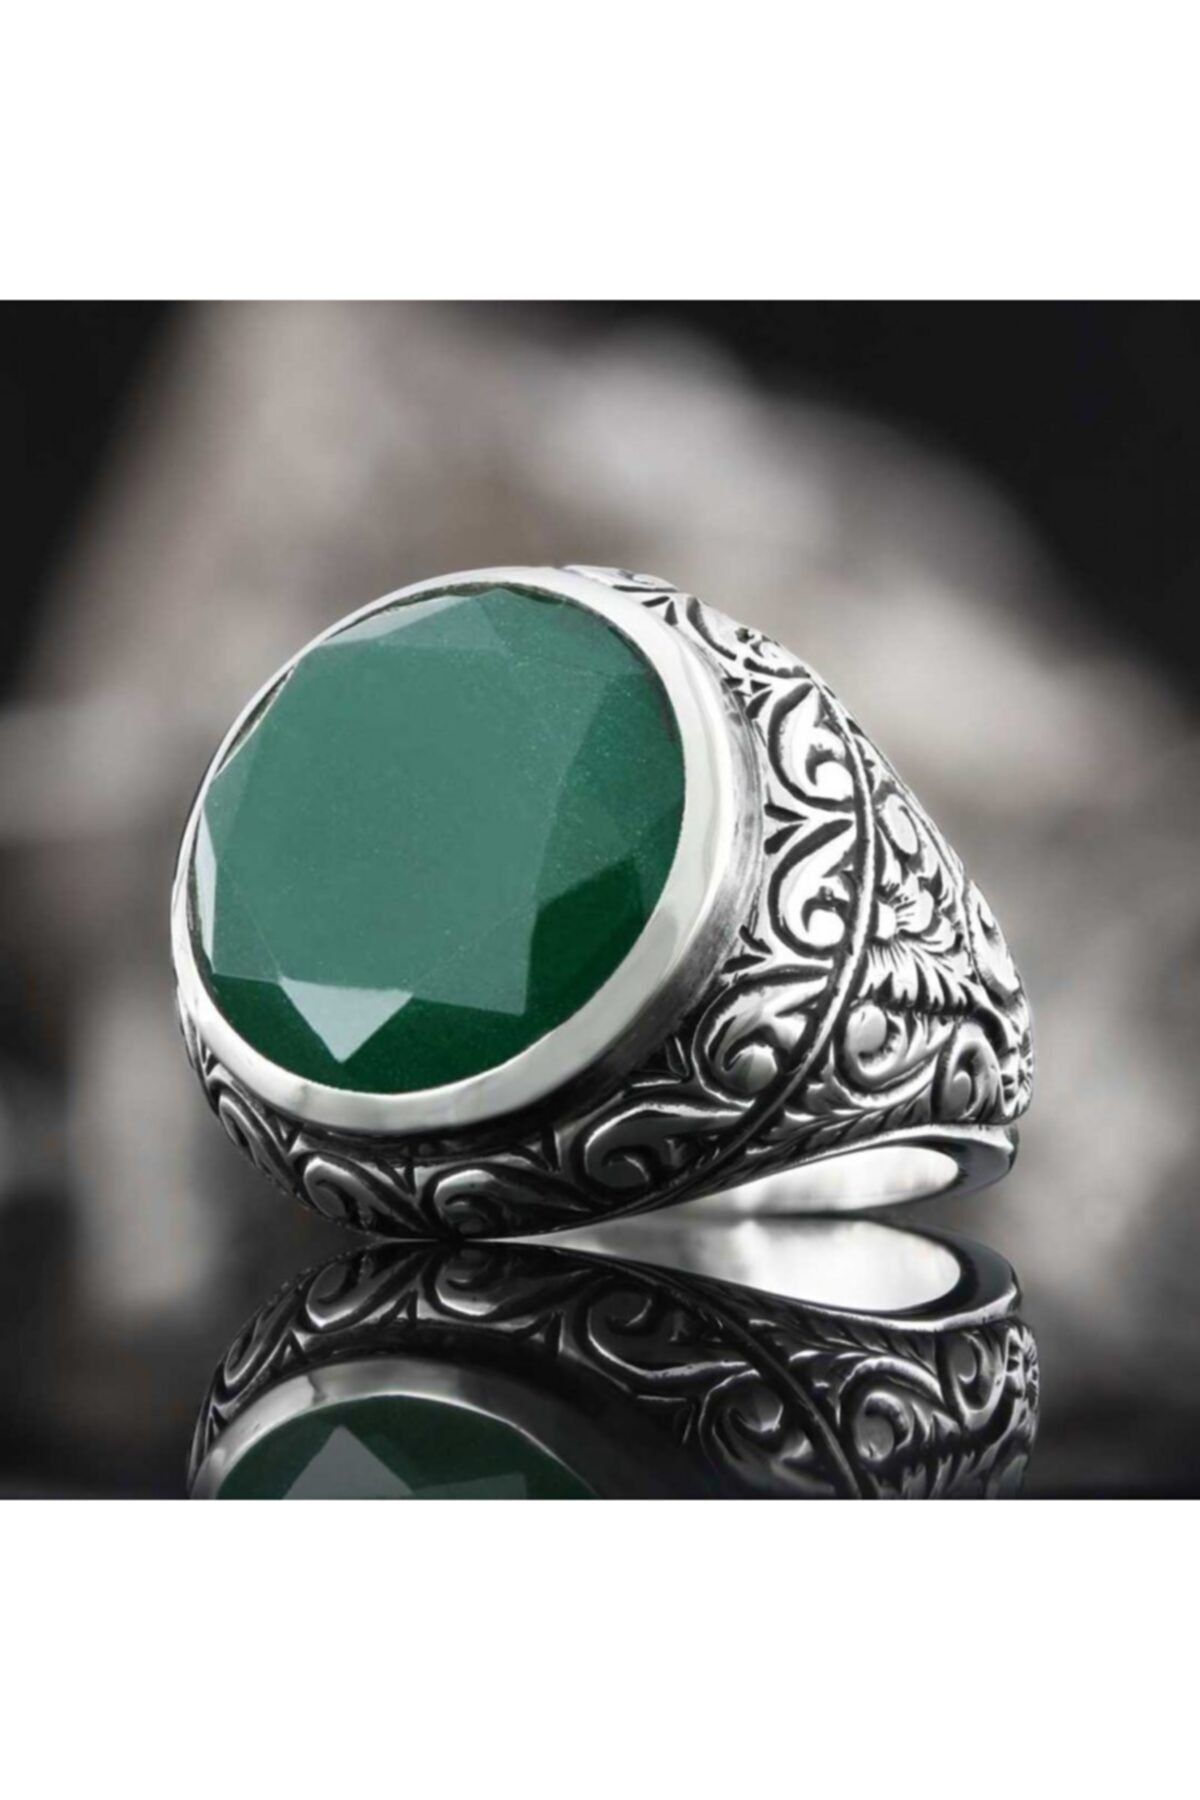 ELMAS İŞ Özel Tasarım Yuvarlak 925 Ayar Gümüş Yeşil Zircon Taşlı Koleksiyon Yüzük